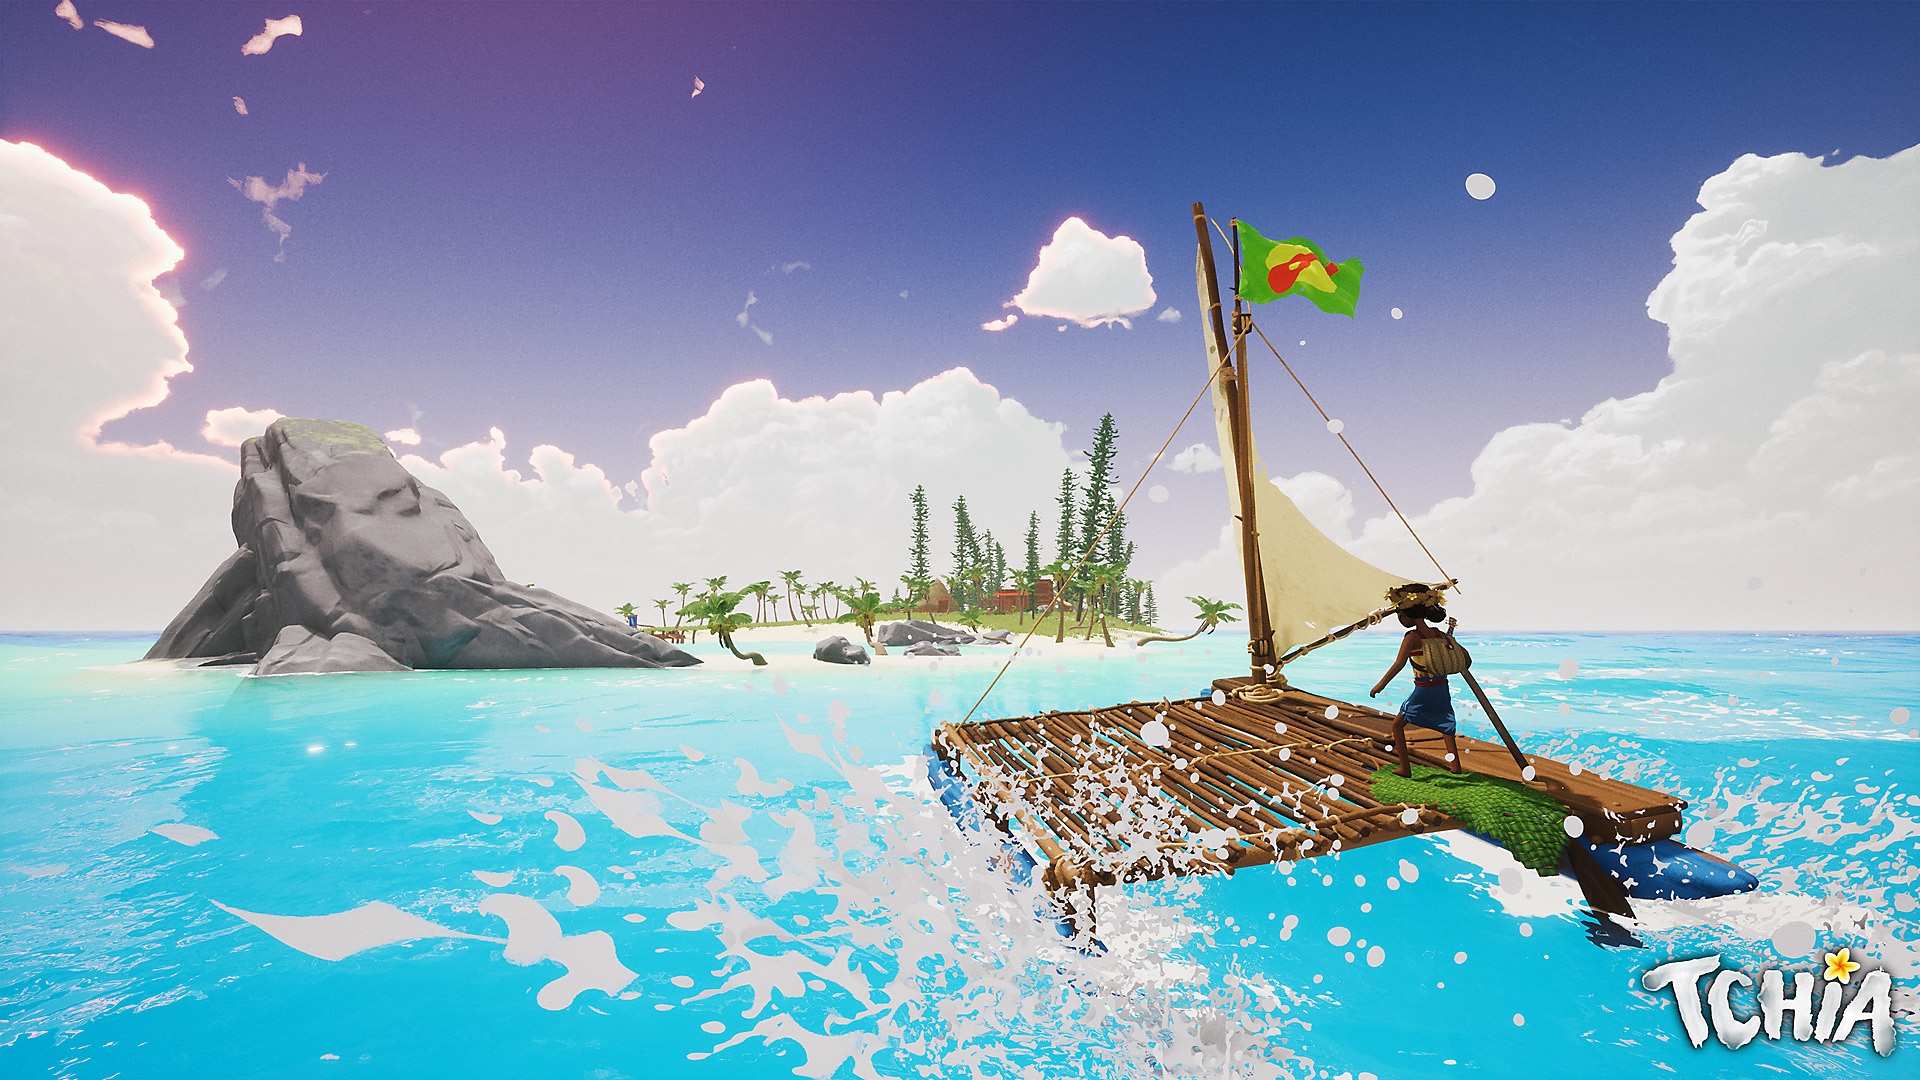 ภาพหน้าจอ Tchia แสดงให้เห็นตัวละครหลักกำลังล่องแพเข้าเกาะ